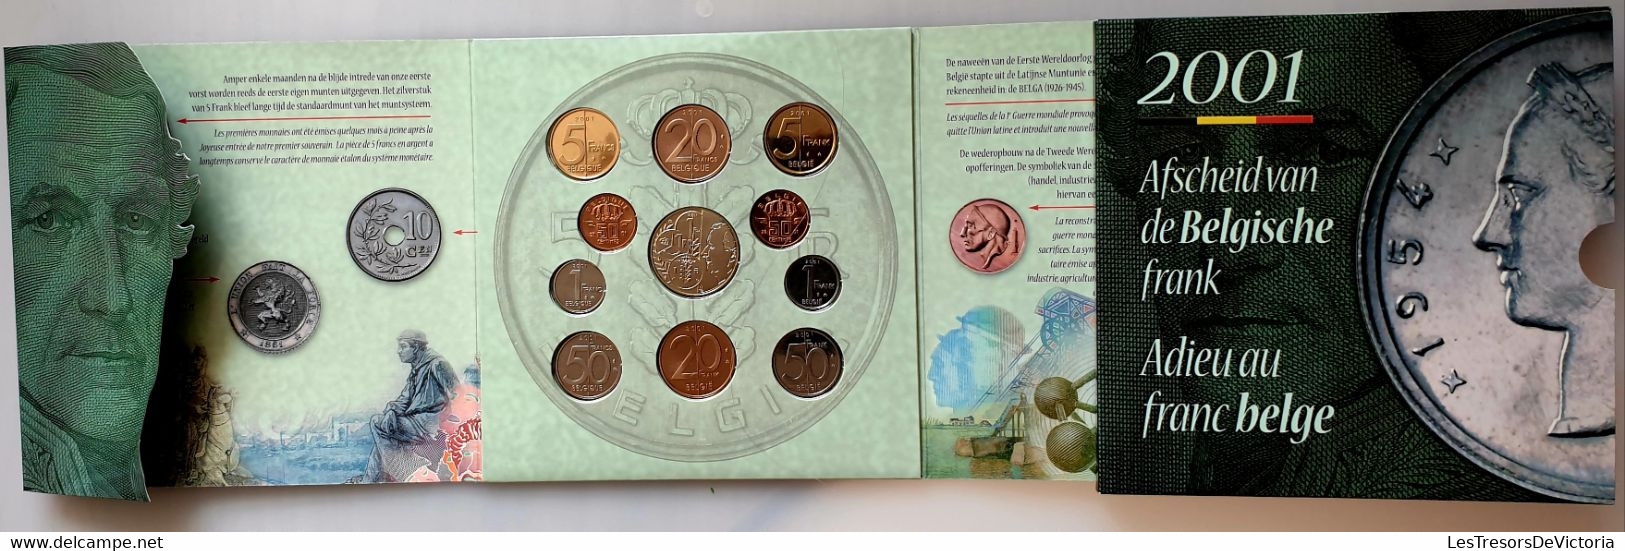 Monnaie 2001 FDC - Adieu Au Franc Belge - Monnaie Royale De Belgique - FDEC, BU, BE & Münzkassetten